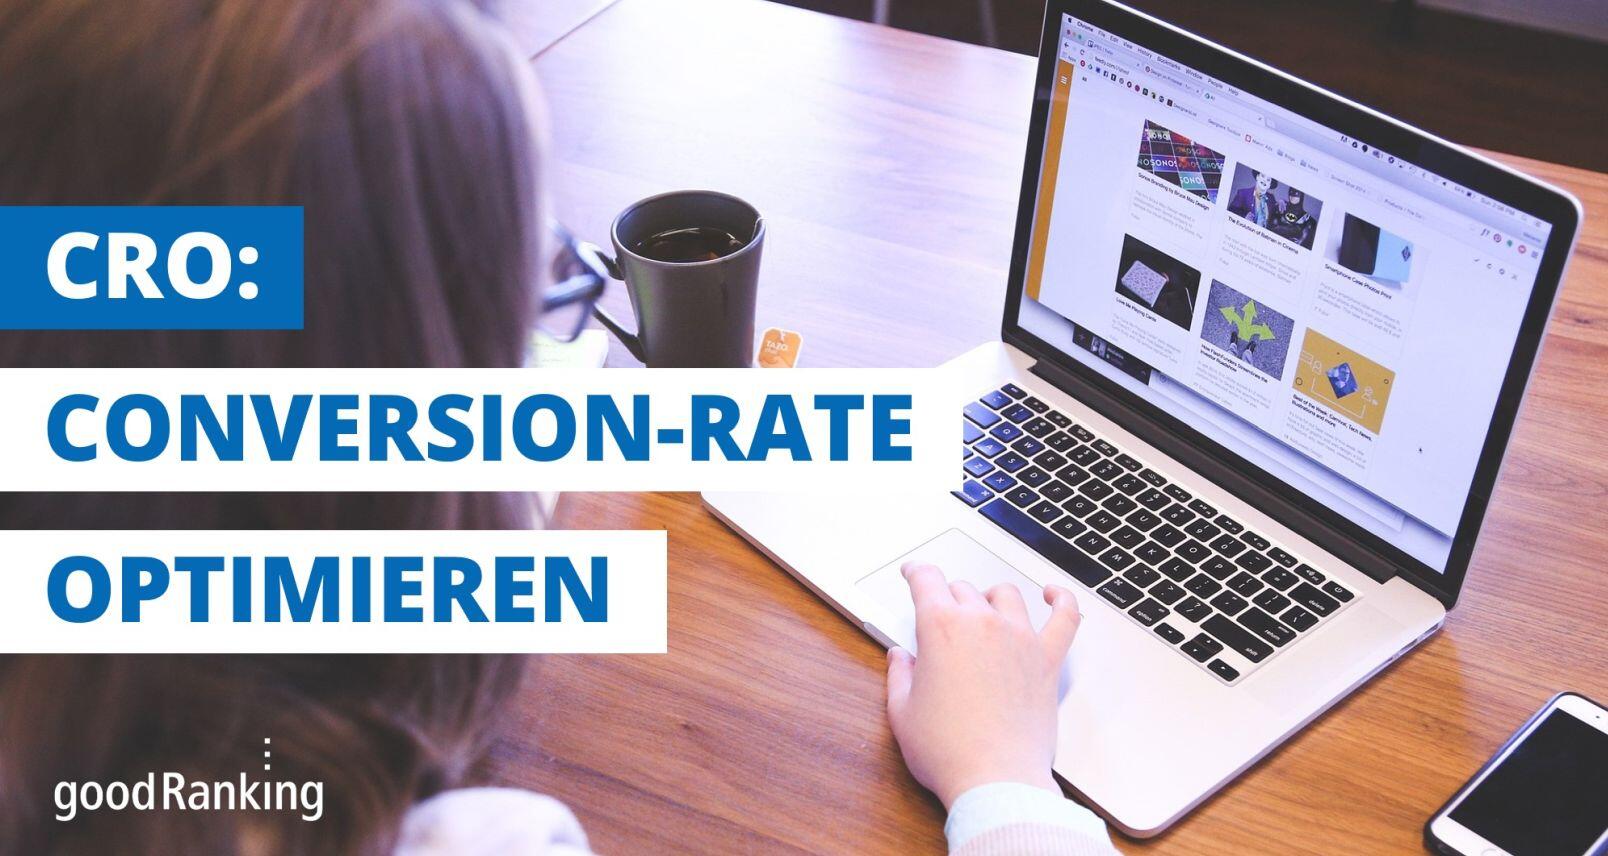 Überlagter Text "CRO: Conversion-Rate optimieren" mit Frau im Hintergrund am Laptop